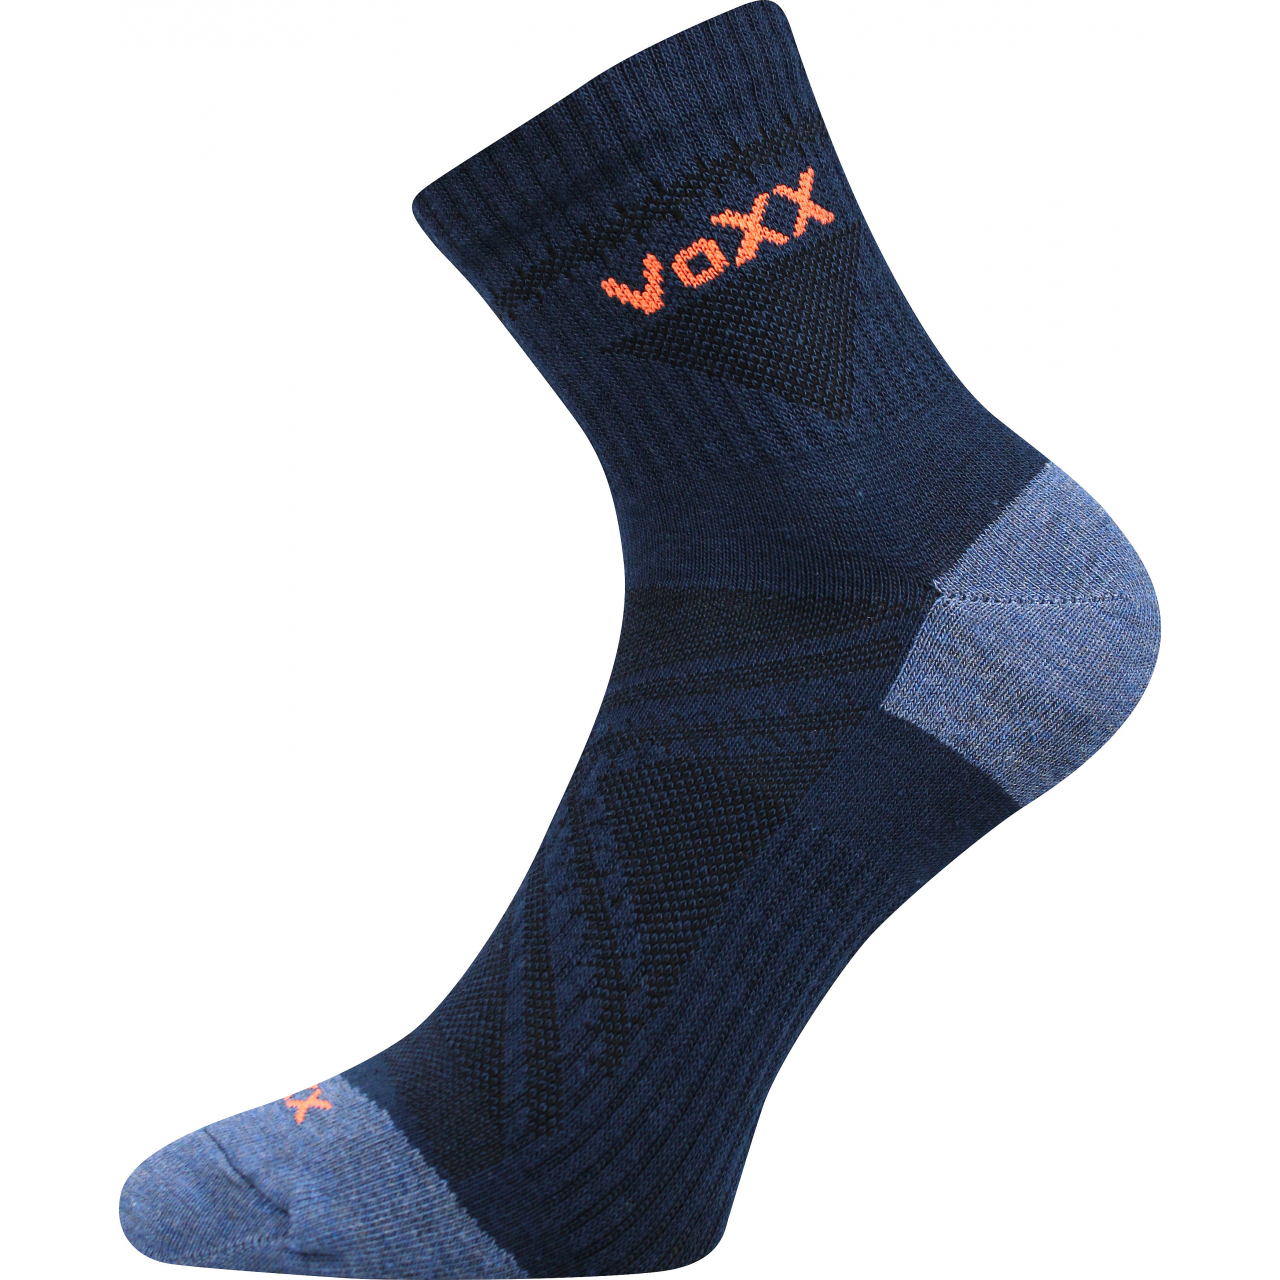 Ponožky sportovní unisex Voxx Rexon 01 - tmavě modré, 39-42